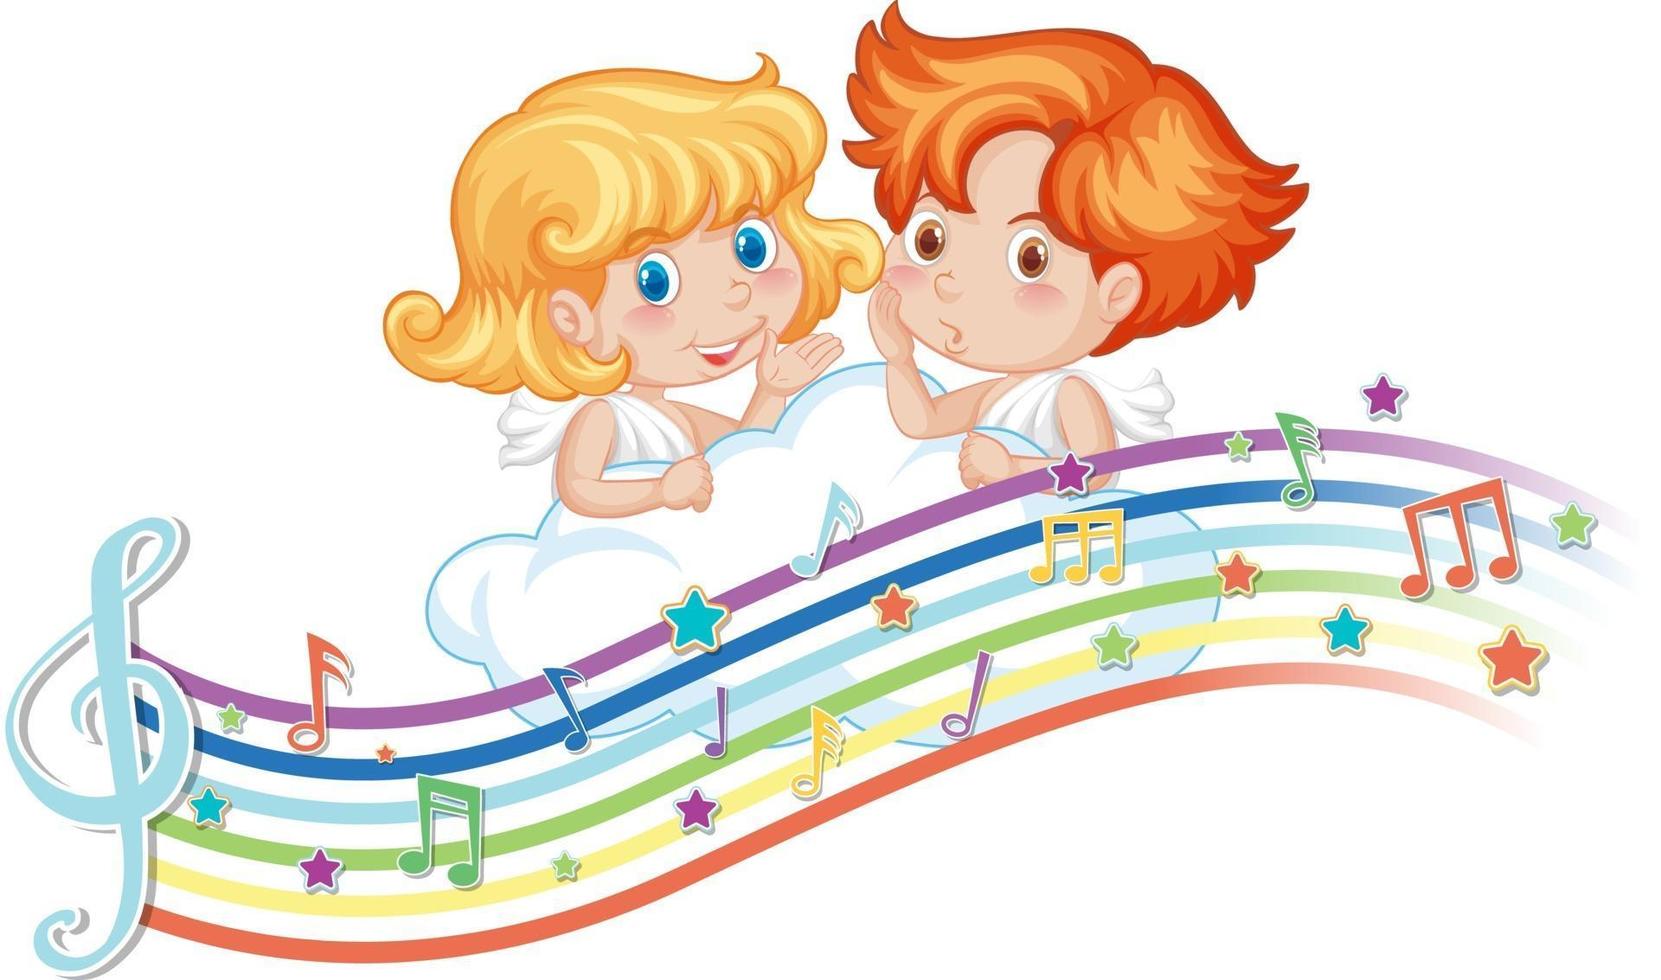 personagem de desenho animado de cupido e menina com símbolos de melodia no arco-íris vetor